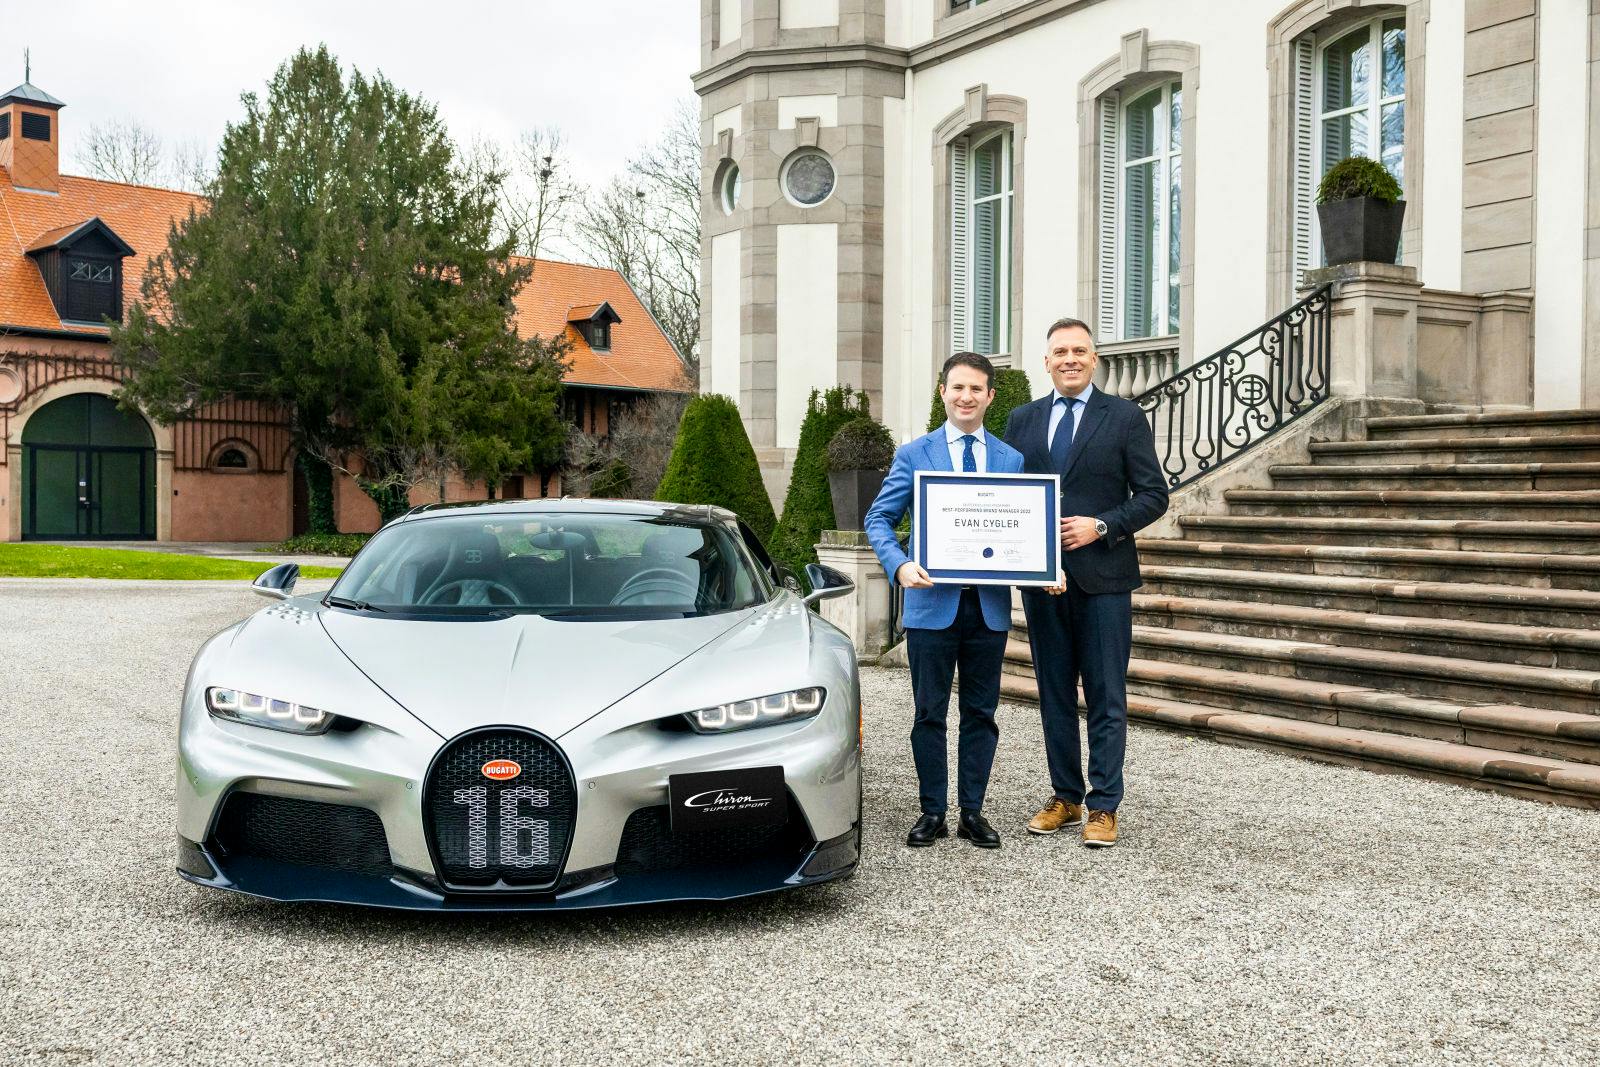 Hendrik Malinowski, Directeur Général de Bugatti, salue l’engagement d’Evan Cygler et son dévouement pour la marque.